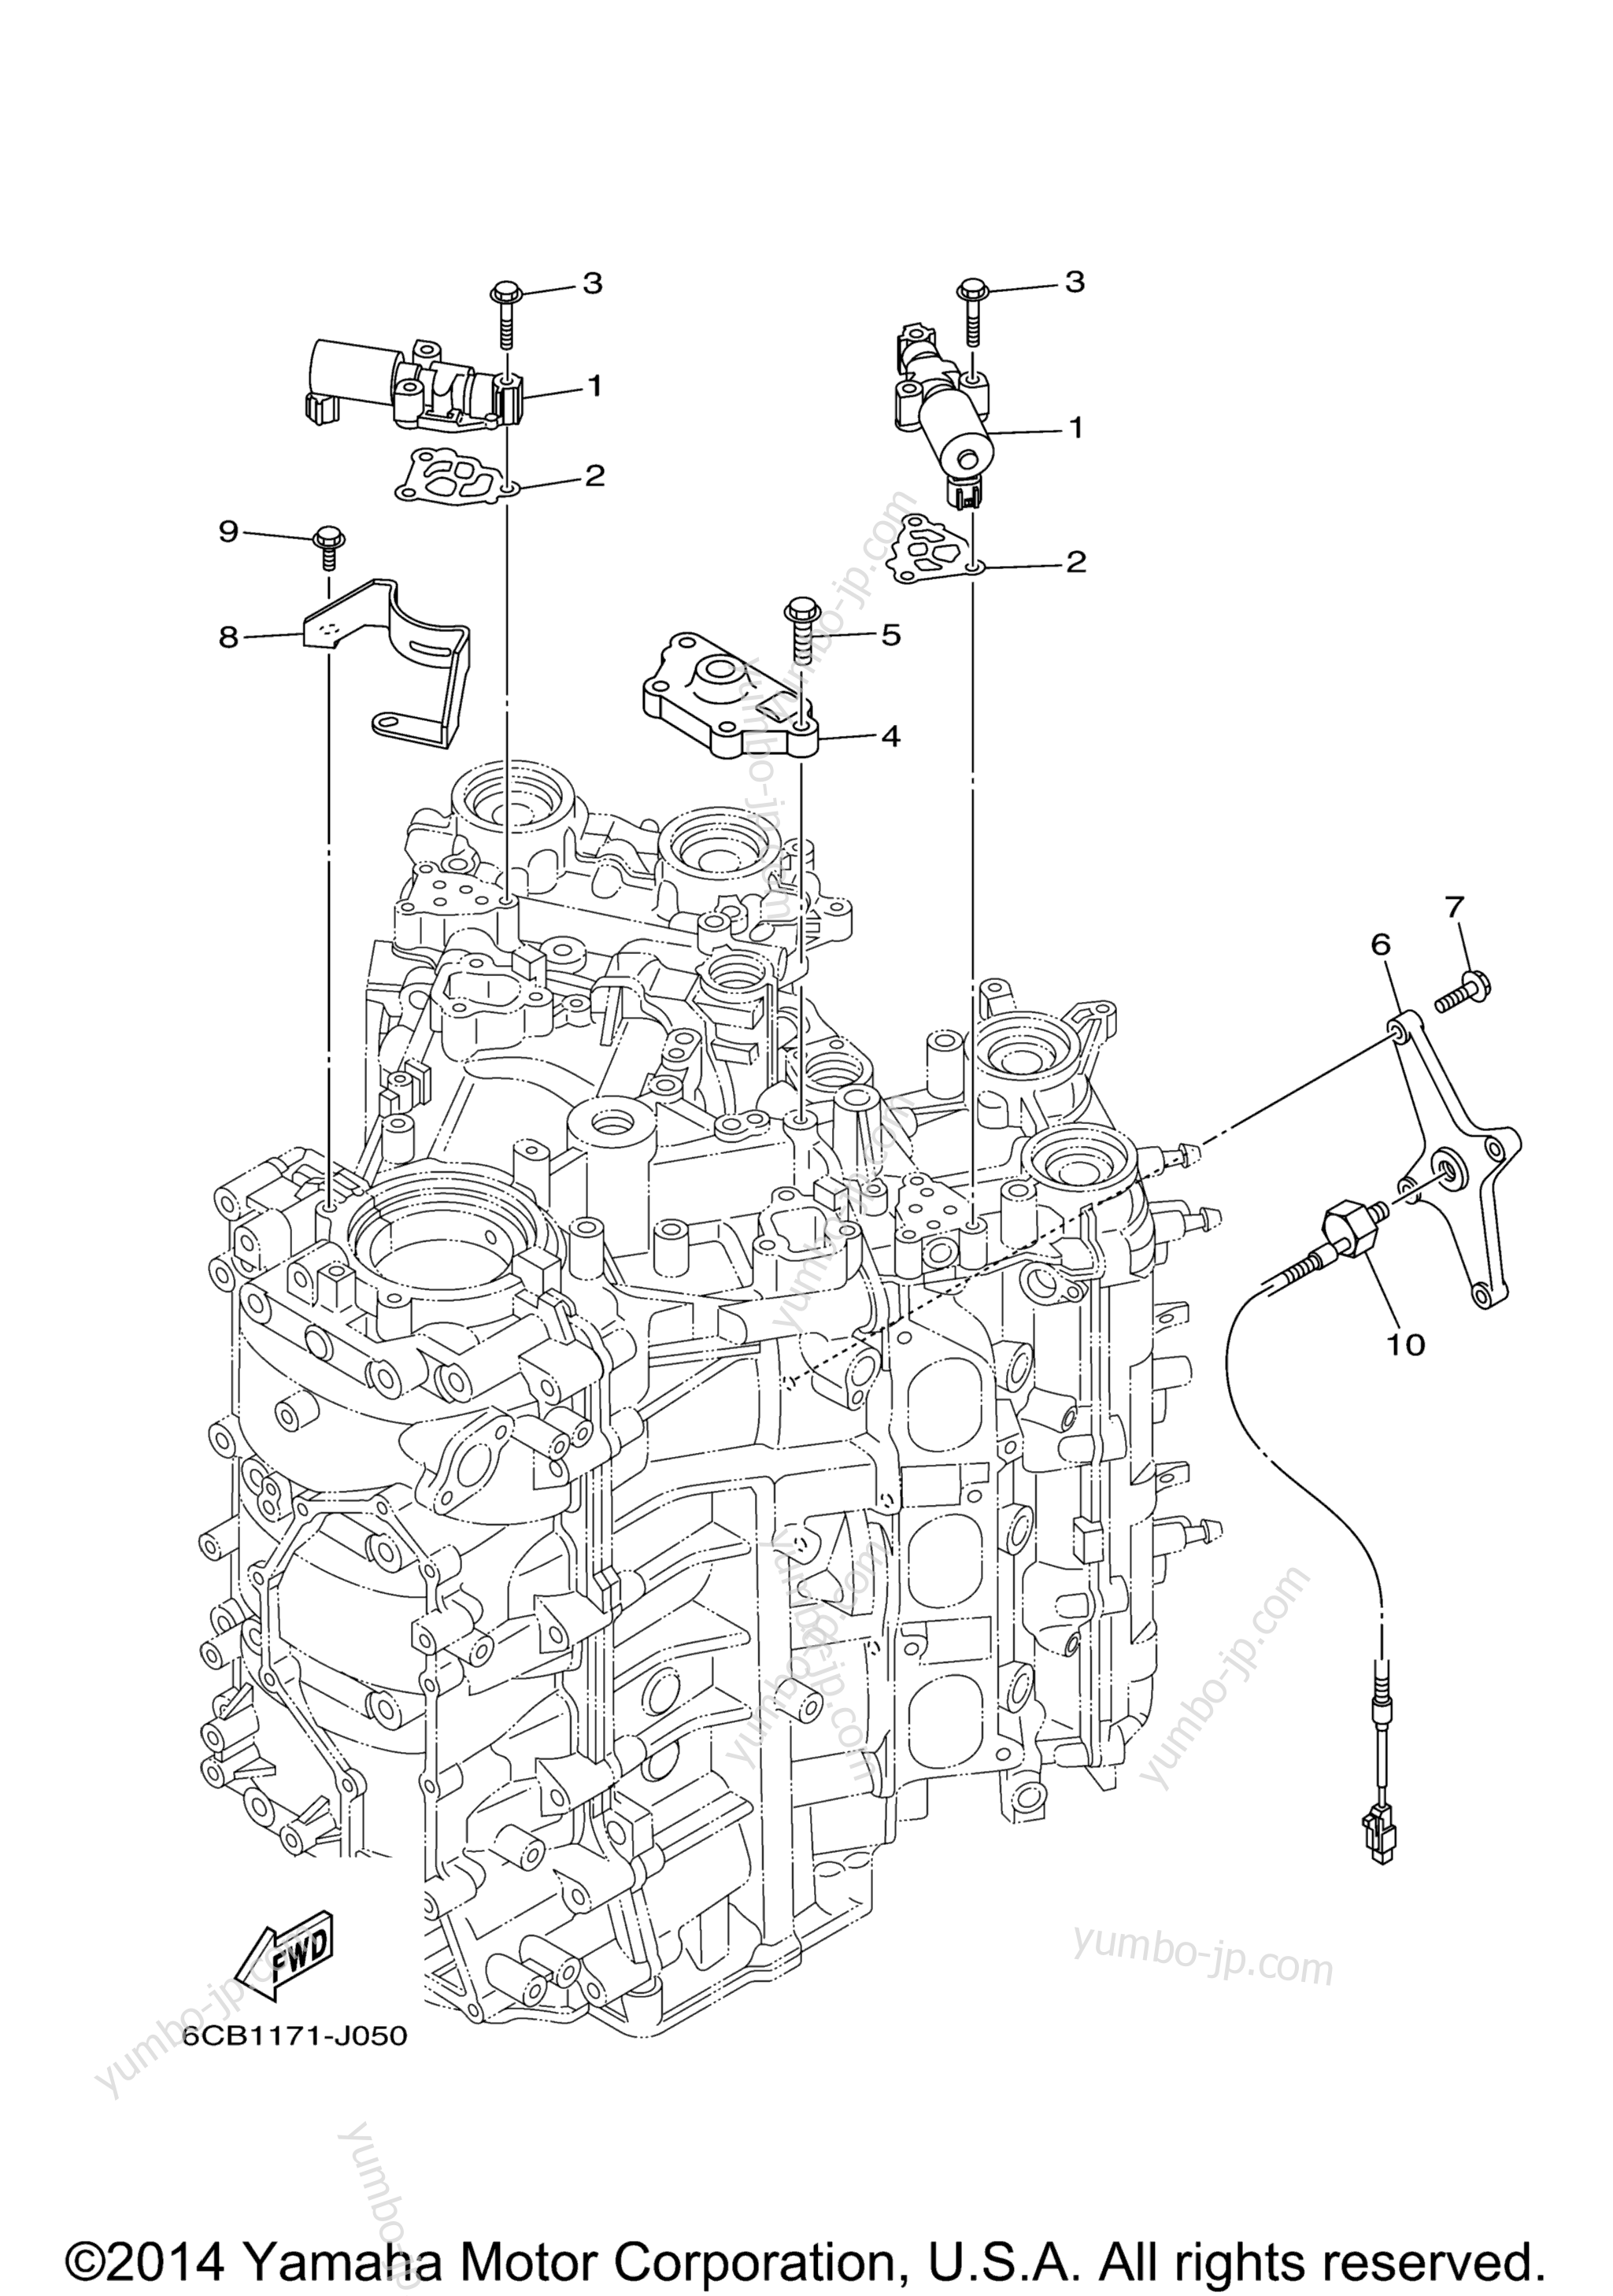 Cylinder Crankcase 3 для лодочных моторов YAMAHA VF250LA_01 (0112) 2006 г.